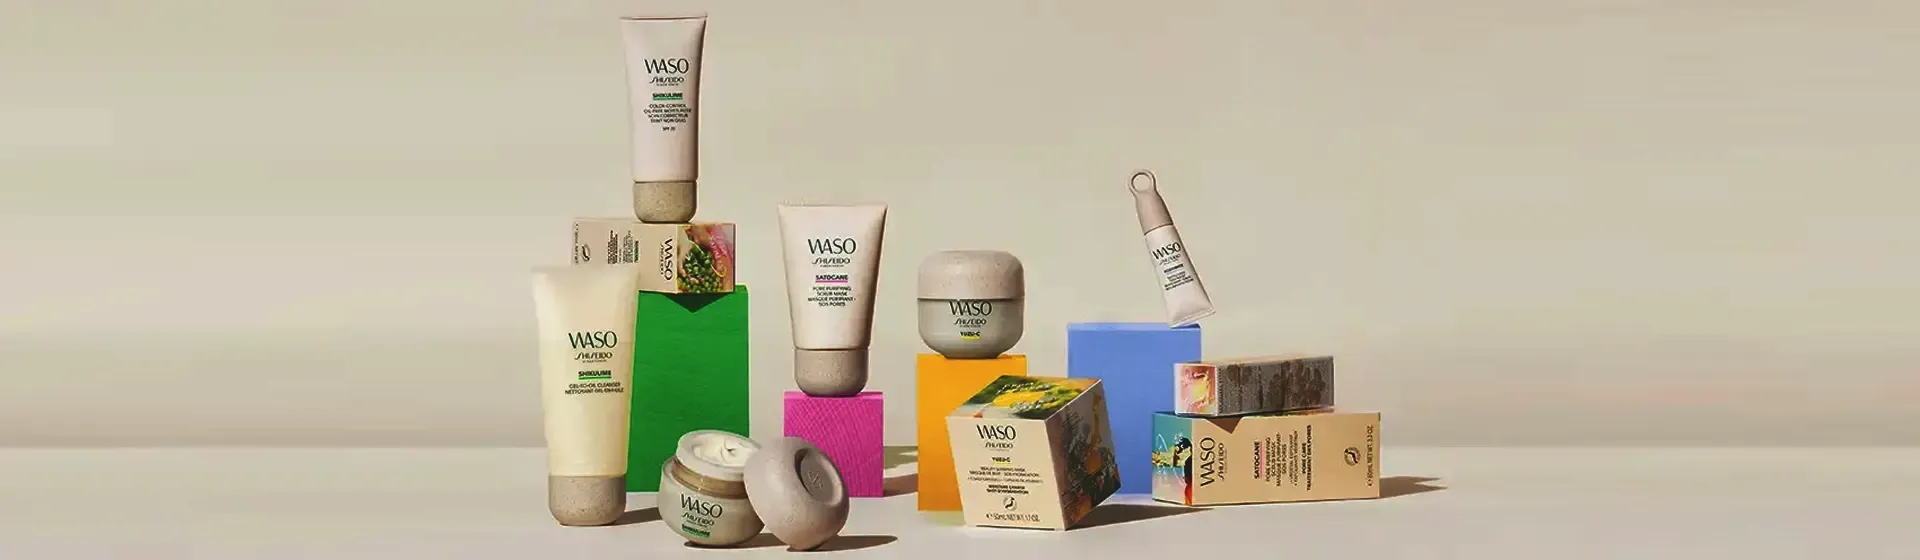 Vários produtos da linha Shiseido Waso em destaque central